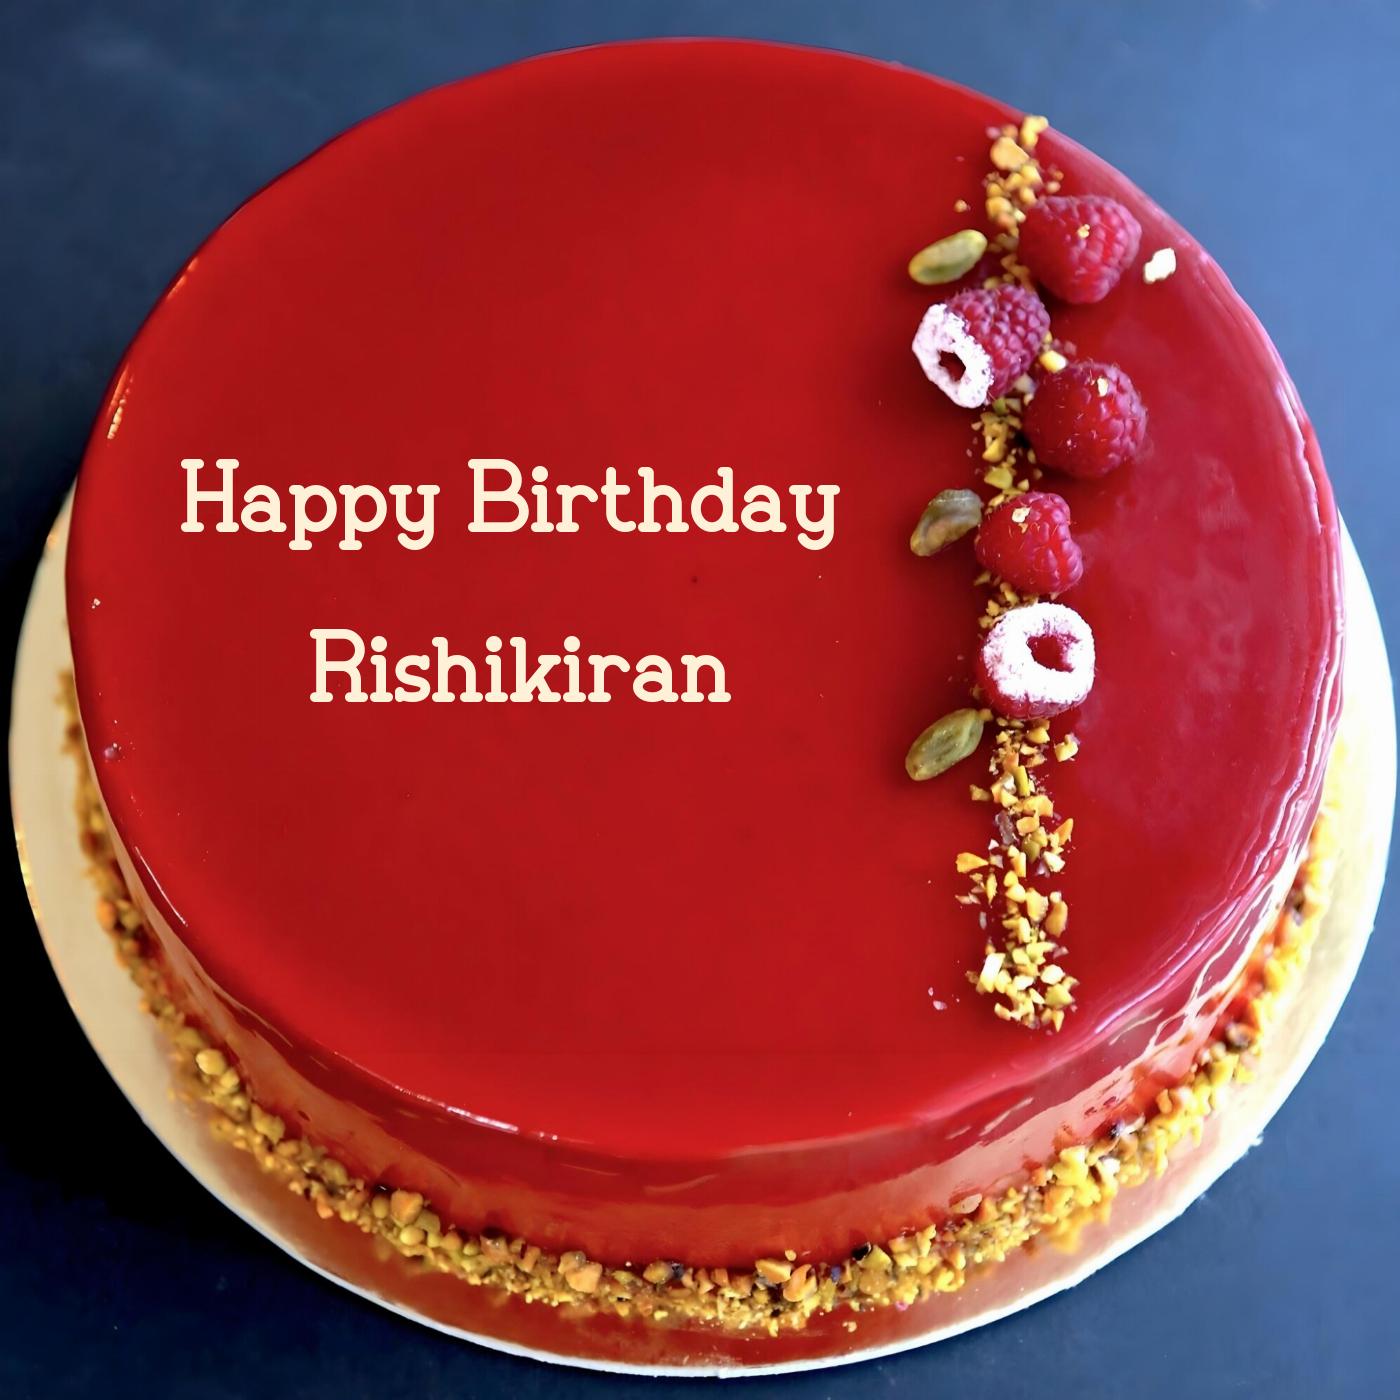 Happy Birthday Rishikiran Red Raspberry Cake